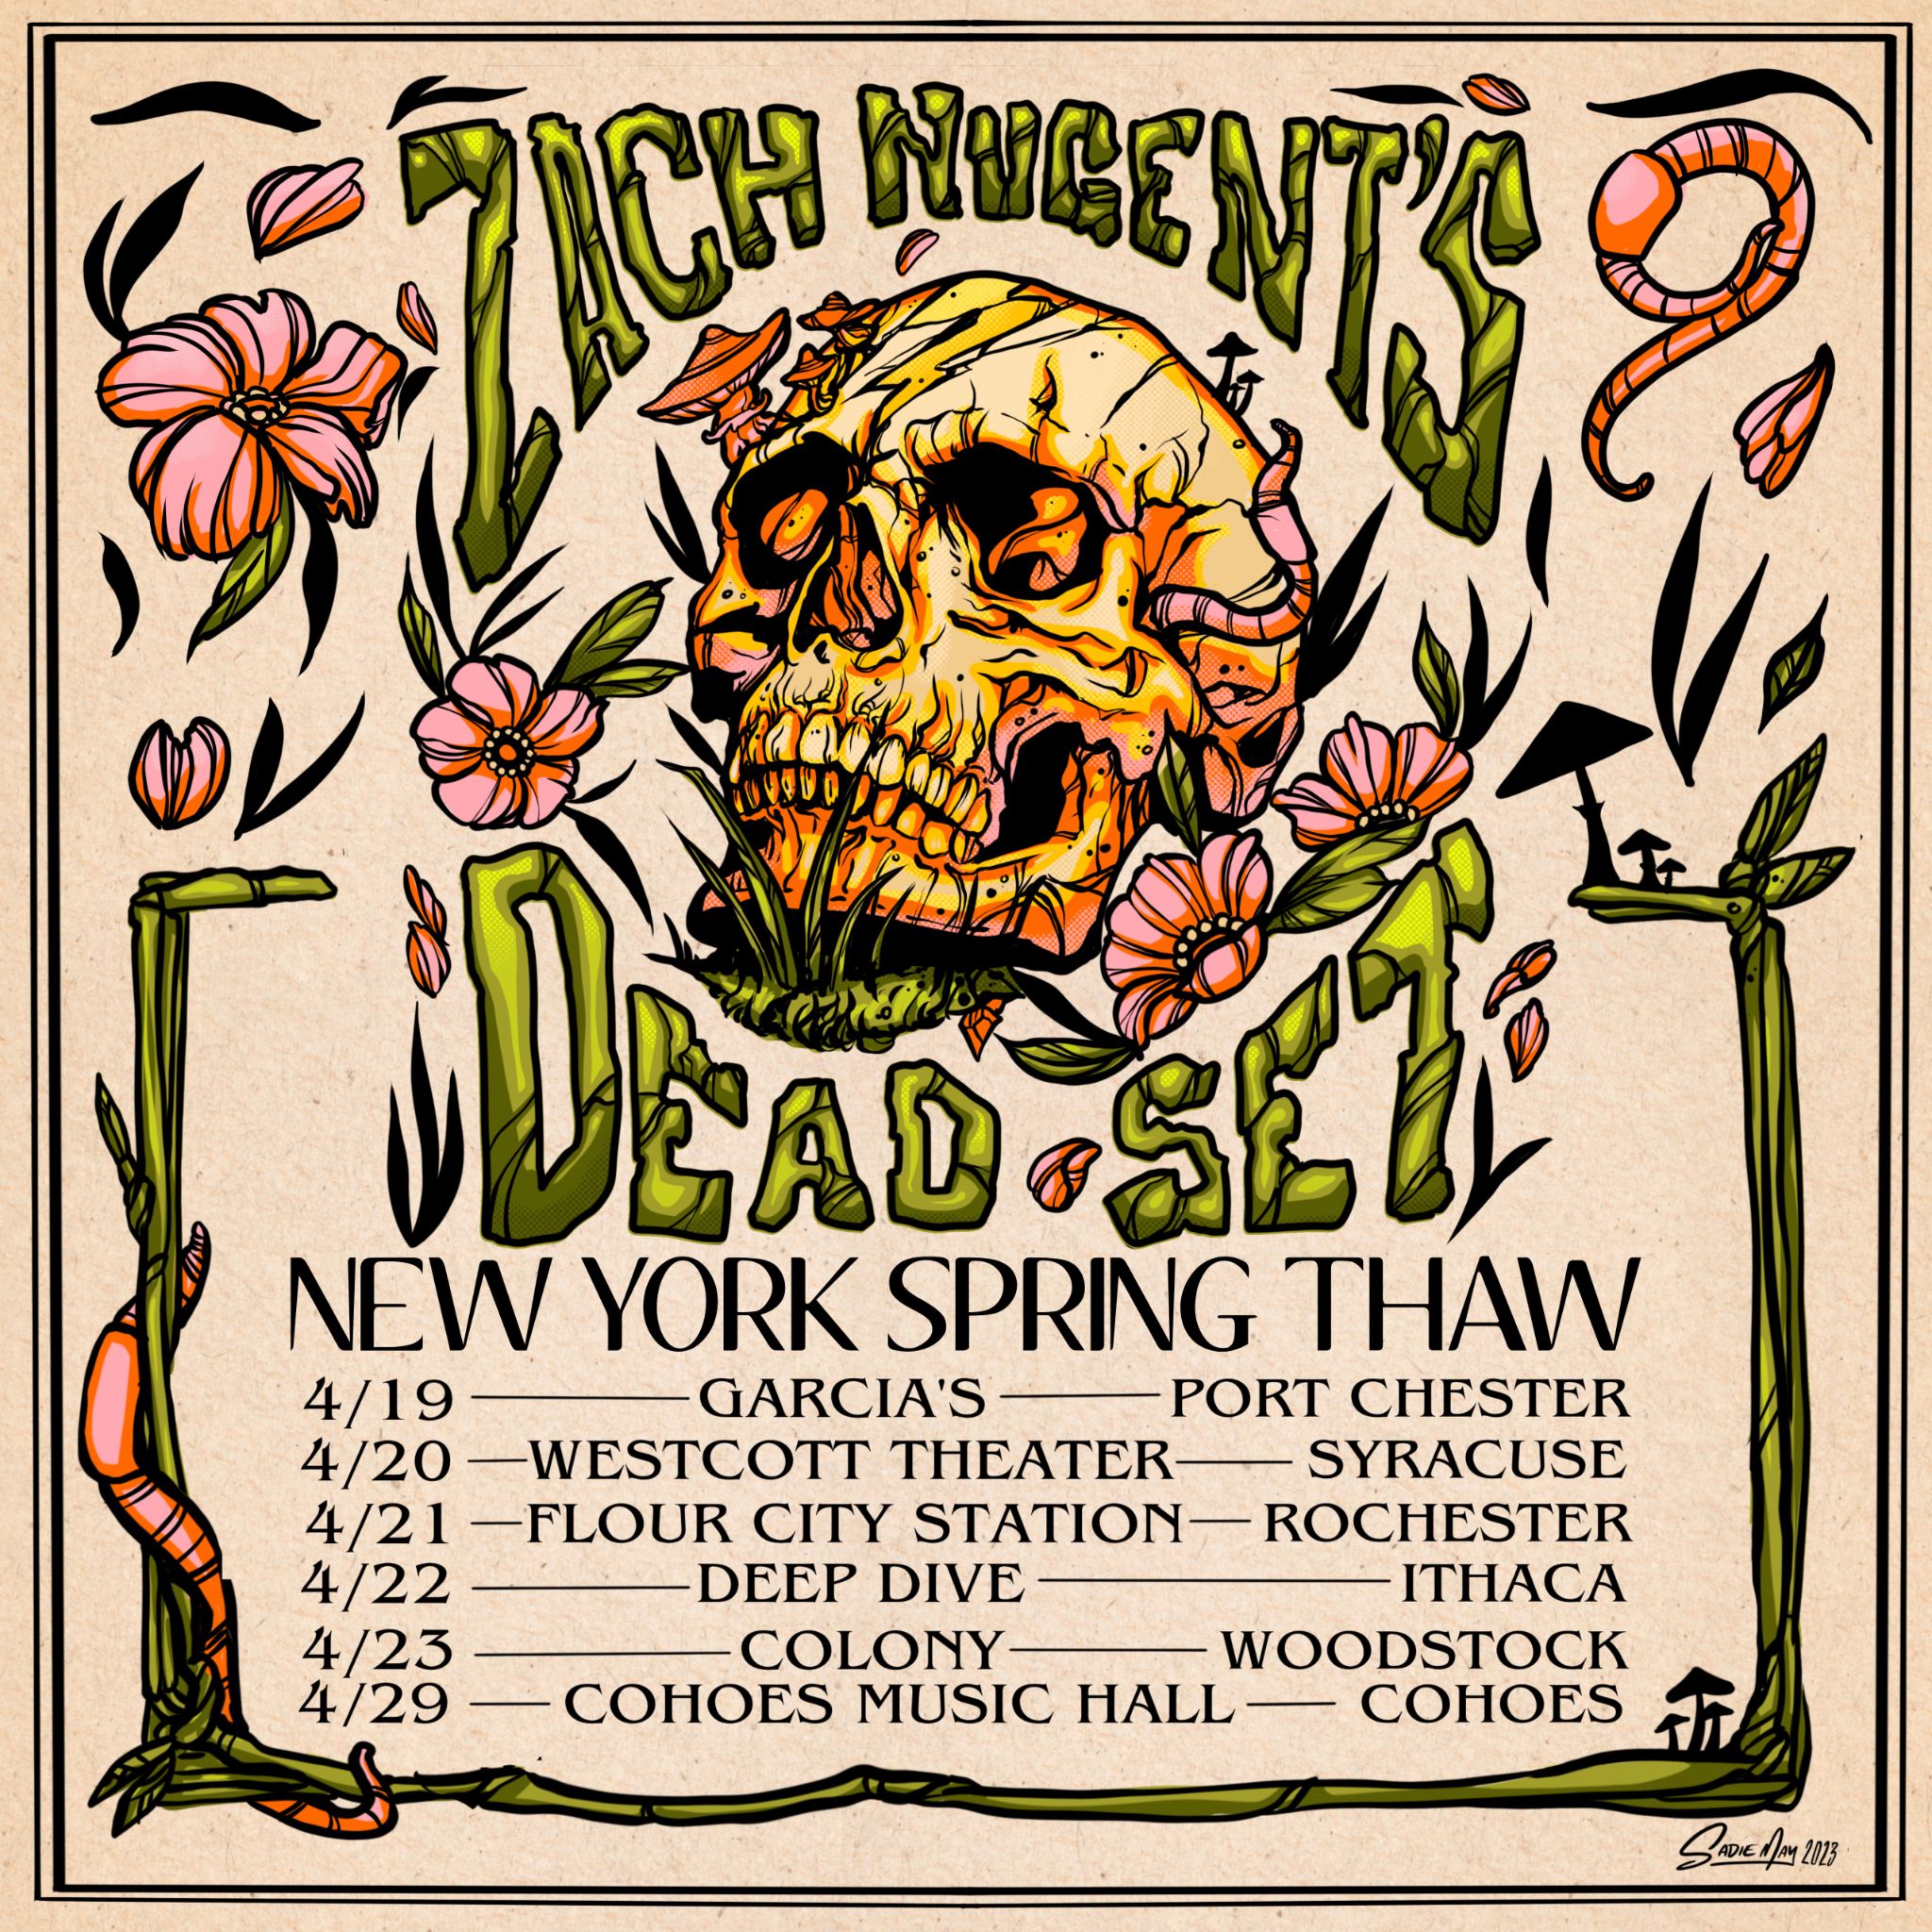 ZACH NUGENT'S DEAD SET ANNOUNCES ‘SPRING THAW’ NY TOUR